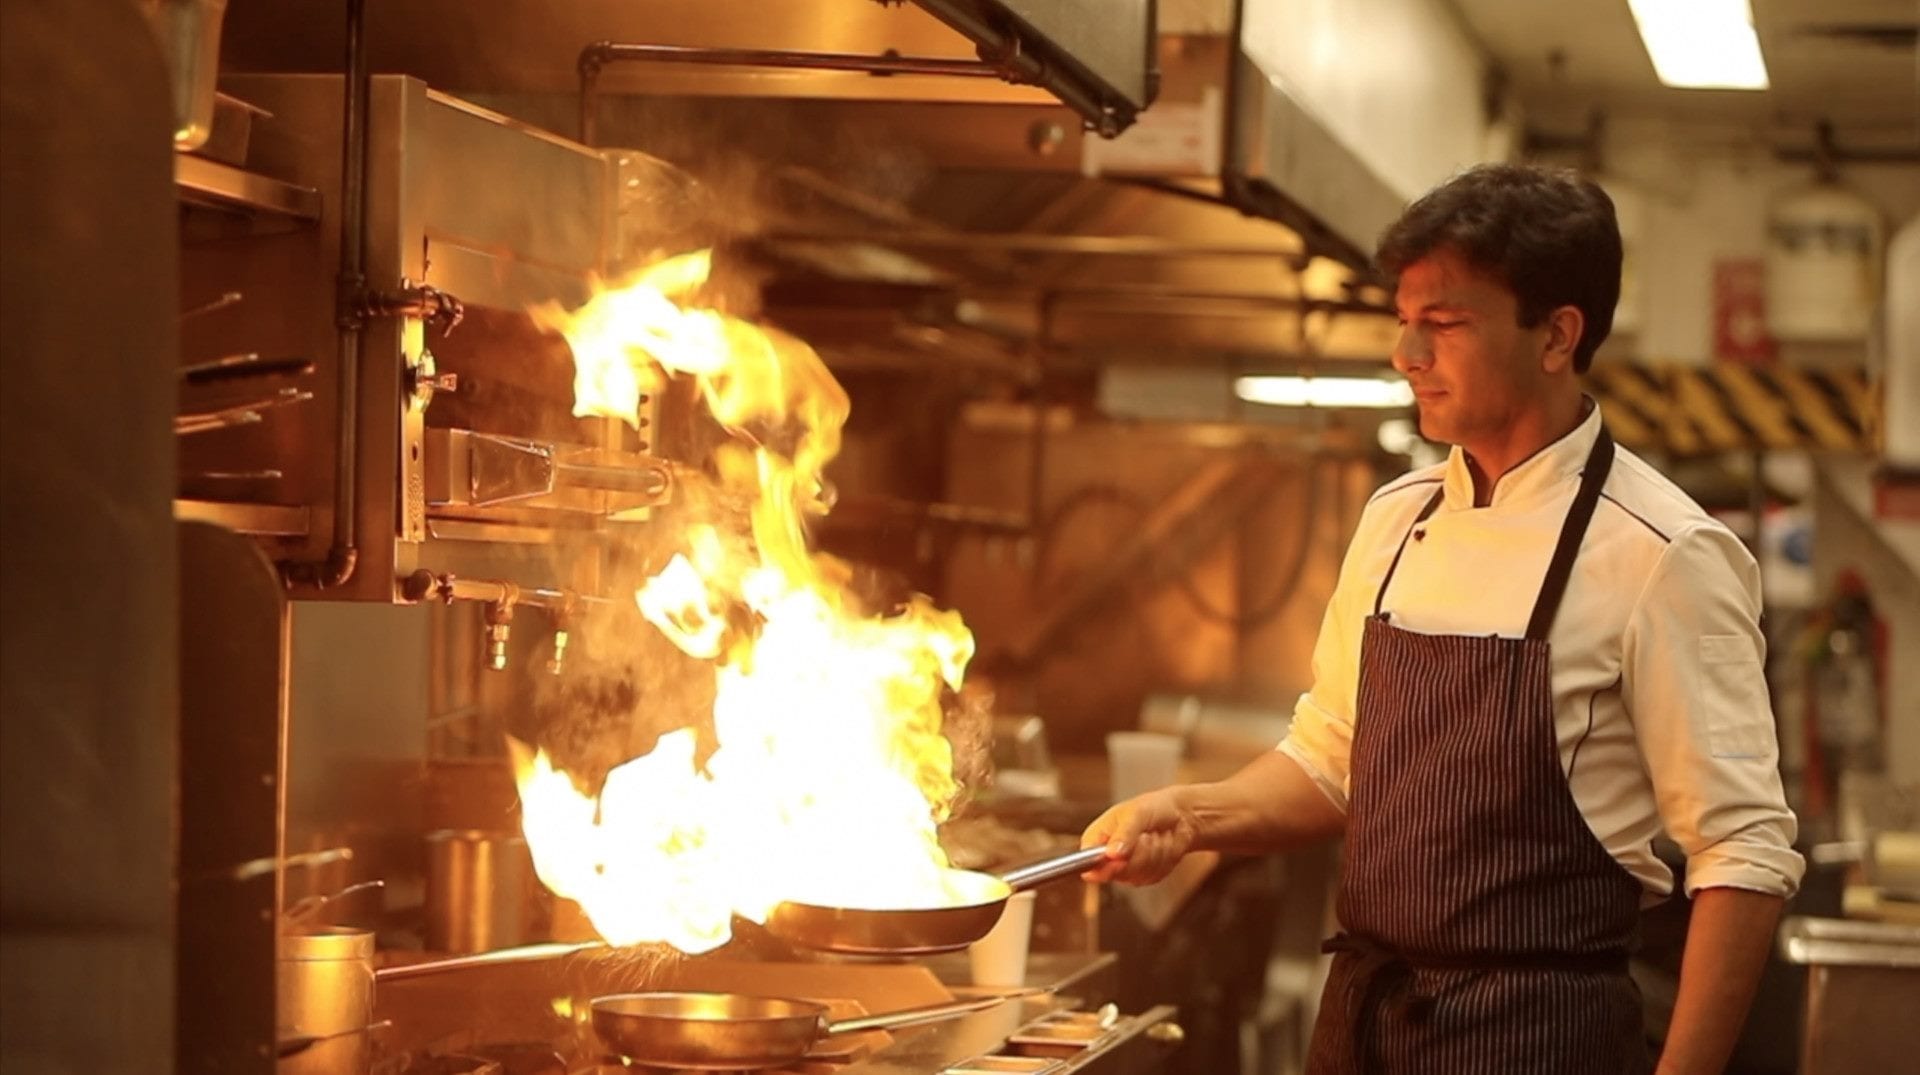 Una scena del film Buried Seeds con il cuoco che fiammeggia una padella in cucina